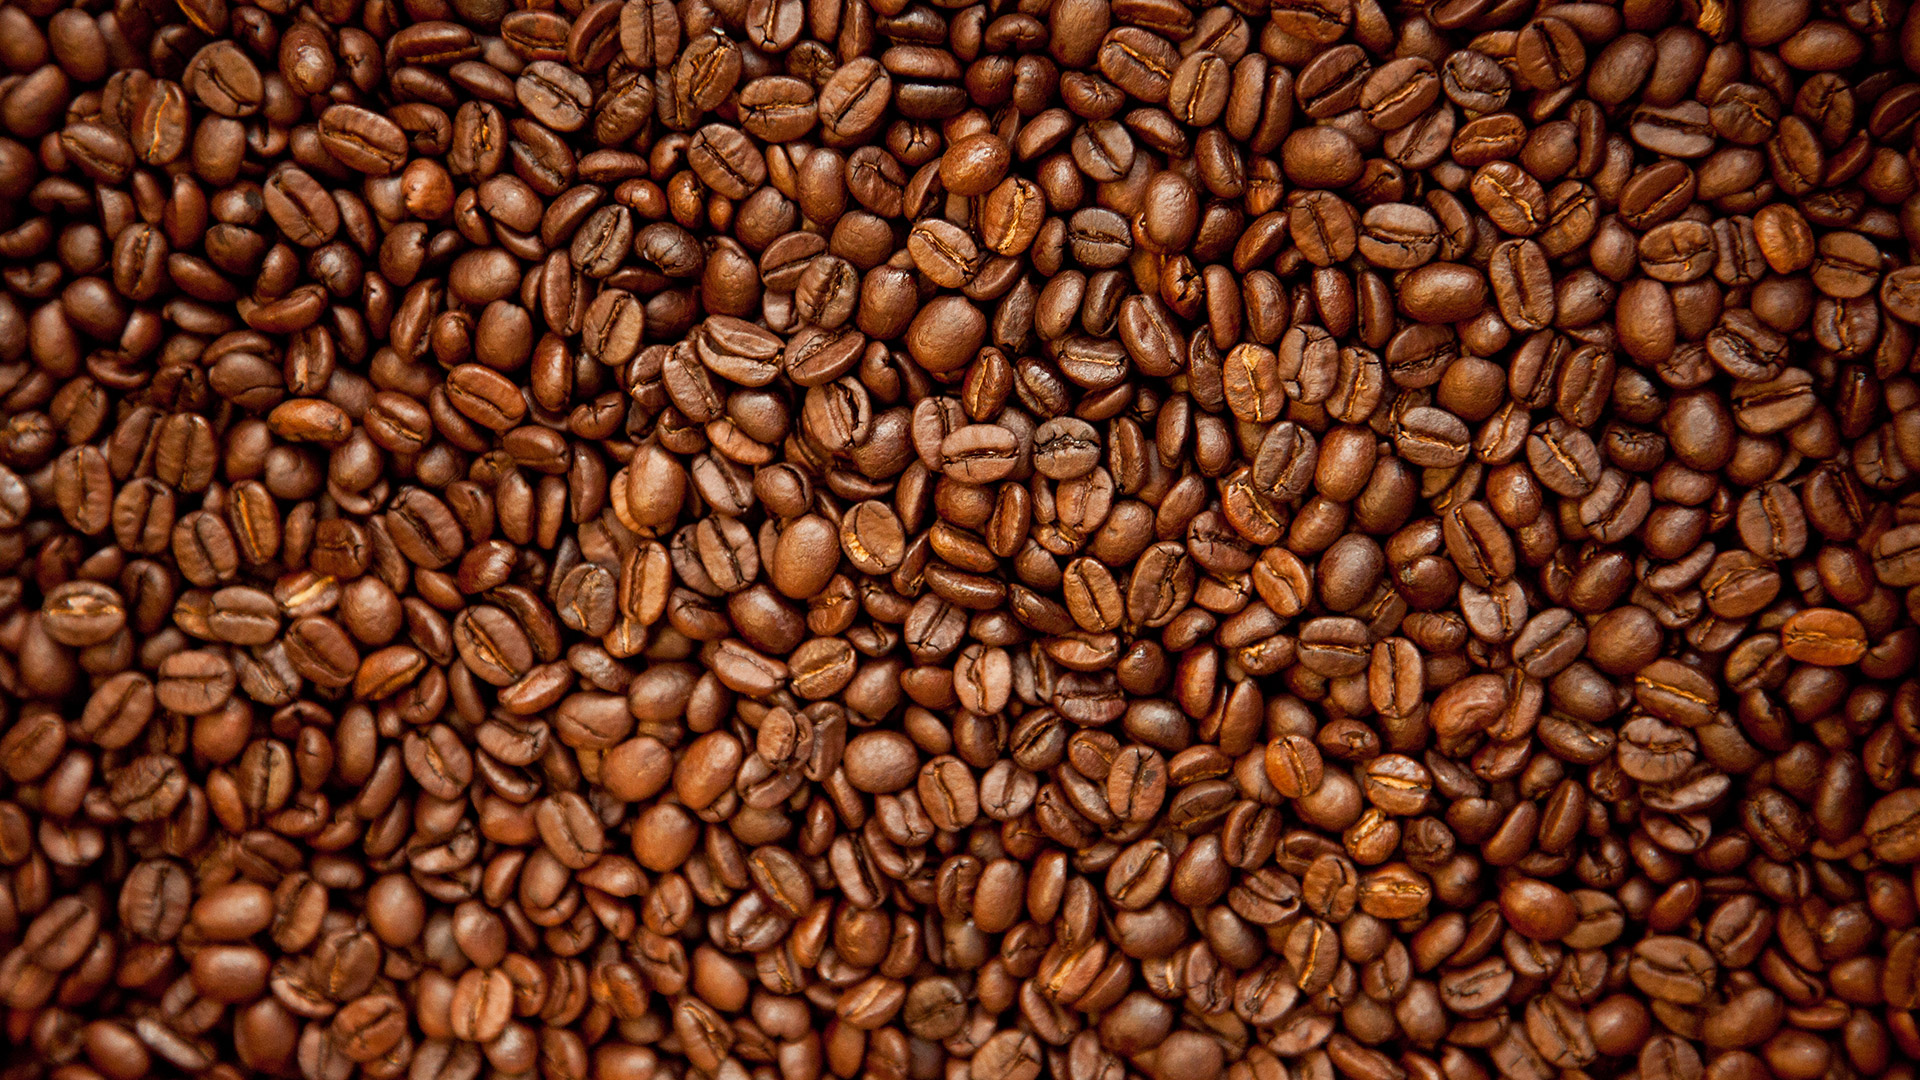 110.000 agricultores -solo de Nespresso- viven de la industria del café (Foto: Getty Images)